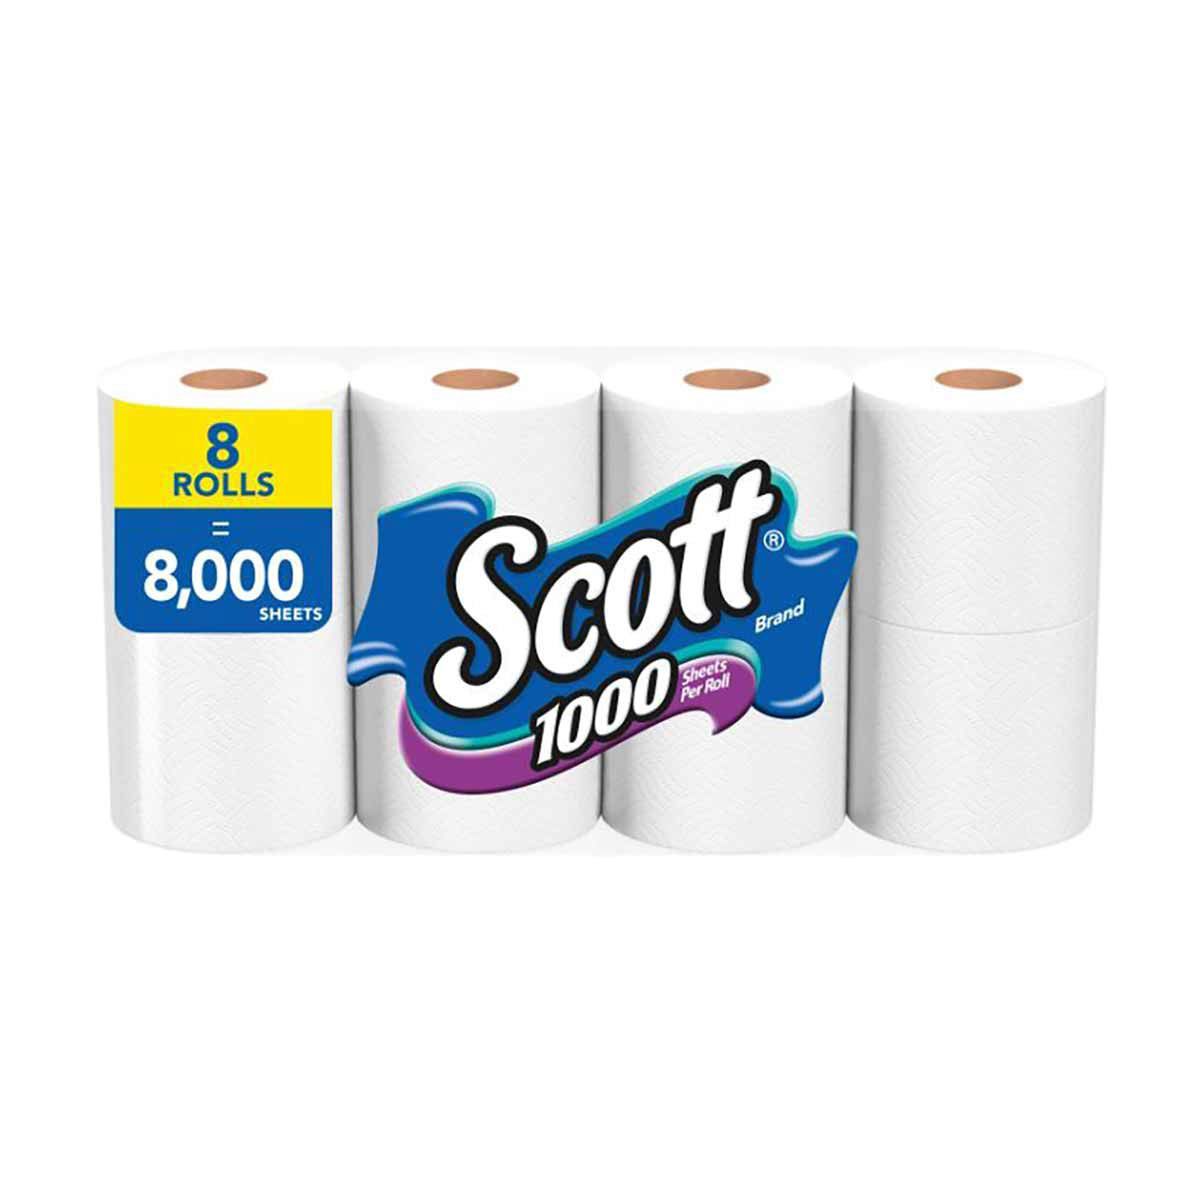 Scott 1000 Toilet Paper Bath Tissue